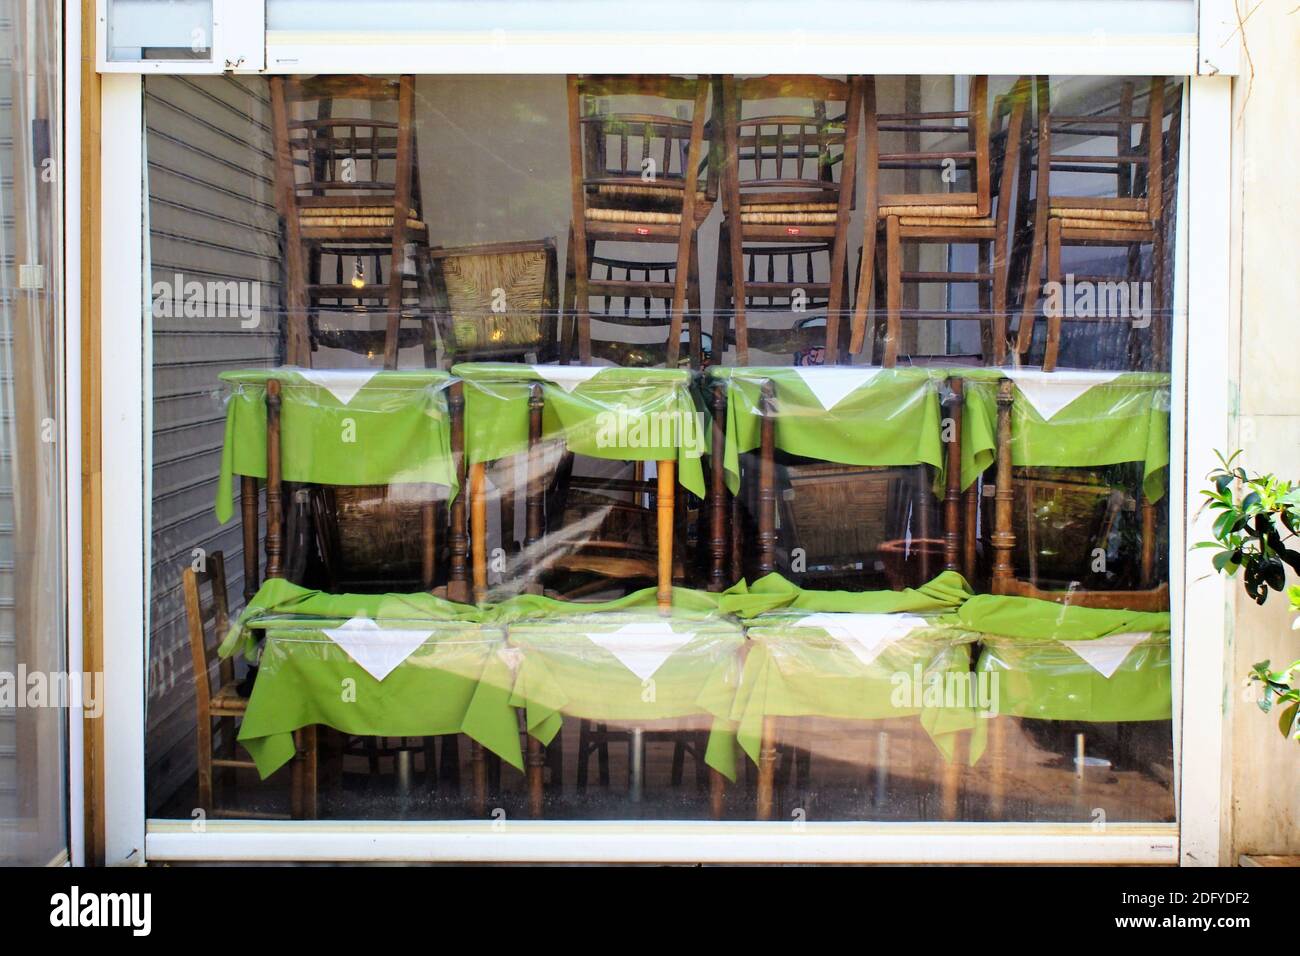 Athen, Griechenland, 6. Mai 2020 - Tische und Stühle stehen vor dem geschlossenen Café-Restaurant während der Coronavirus-Sperre. Stockfoto